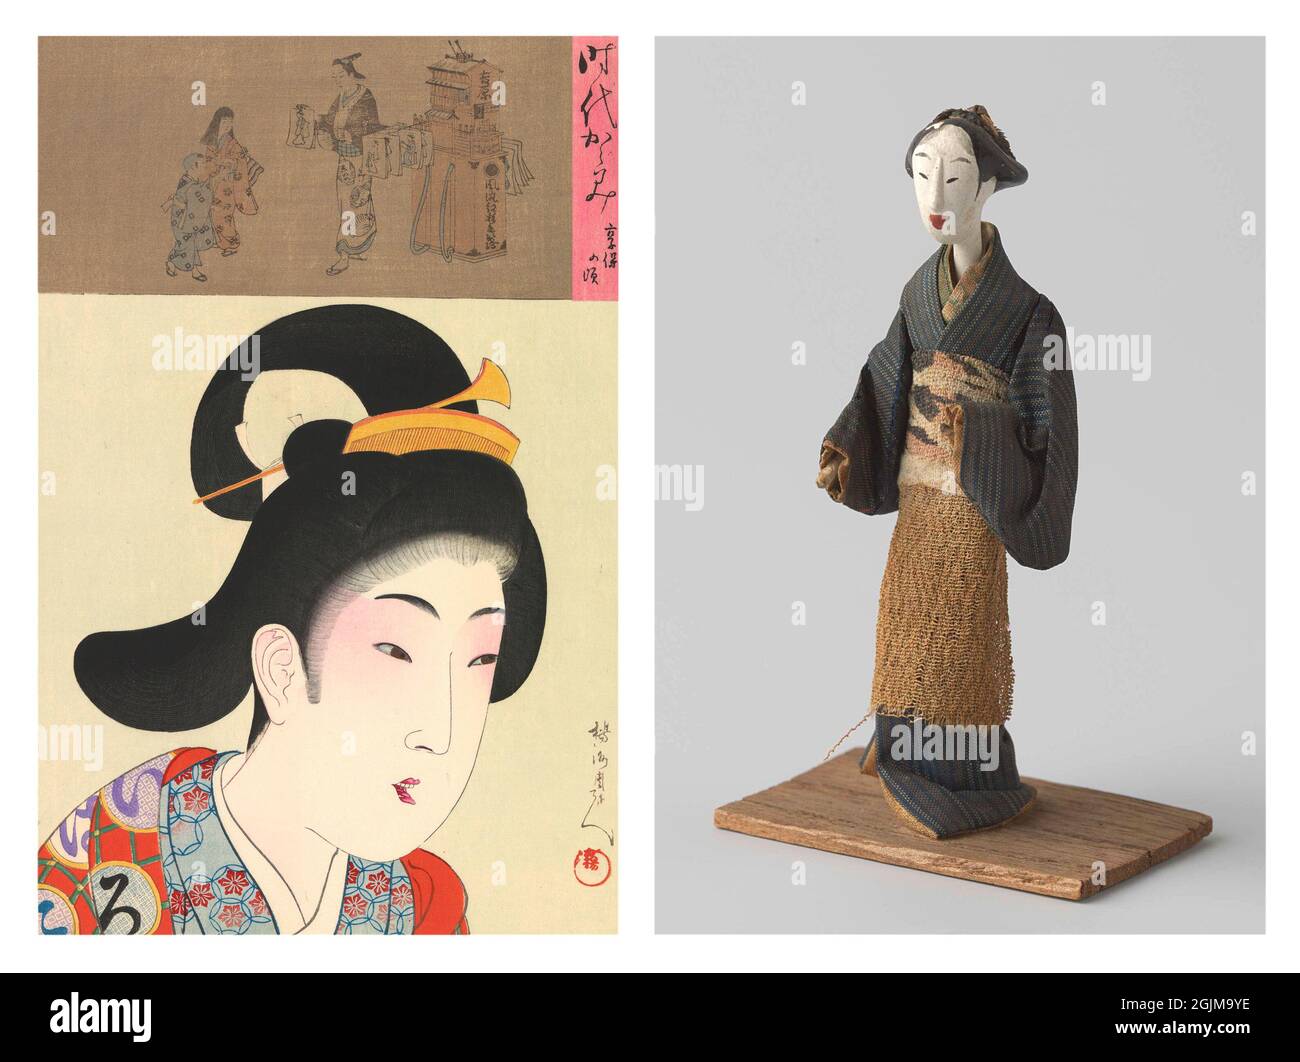 Einzigartige optimierte und verbesserte Anordnung einer antiken japanischen Puppe und eines Holzschnitts aus dem 19. Jahrhundert, der eine japanische Frau in einem Kimono zeigt (oben ein Druckhändler, der Drucke hält) Stockfoto